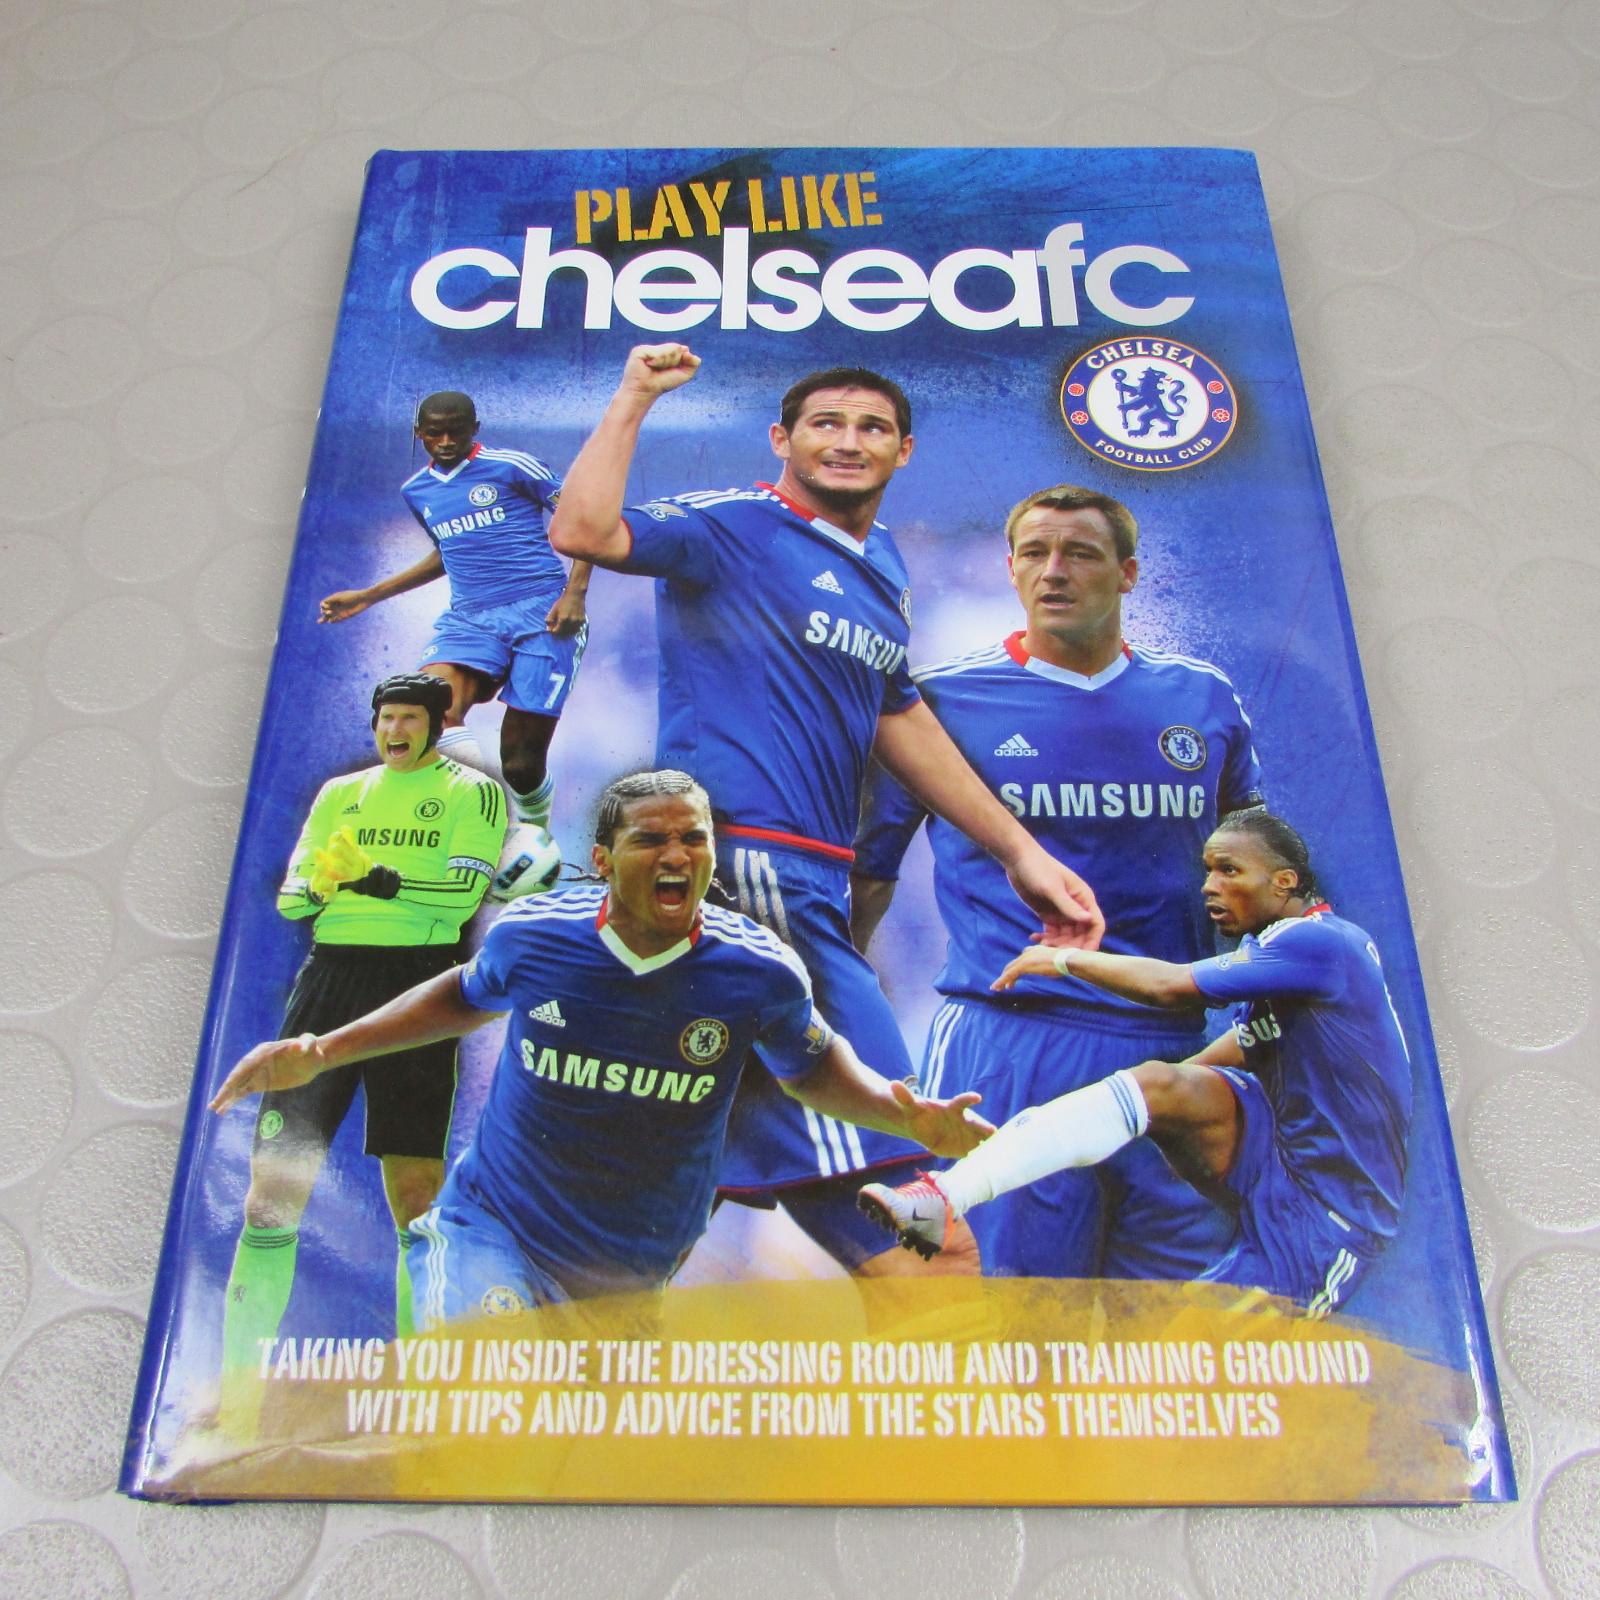 Hrajte ako Chelsea FC (Futbal) (96) Trinity Mirror Sport Media - Knihy